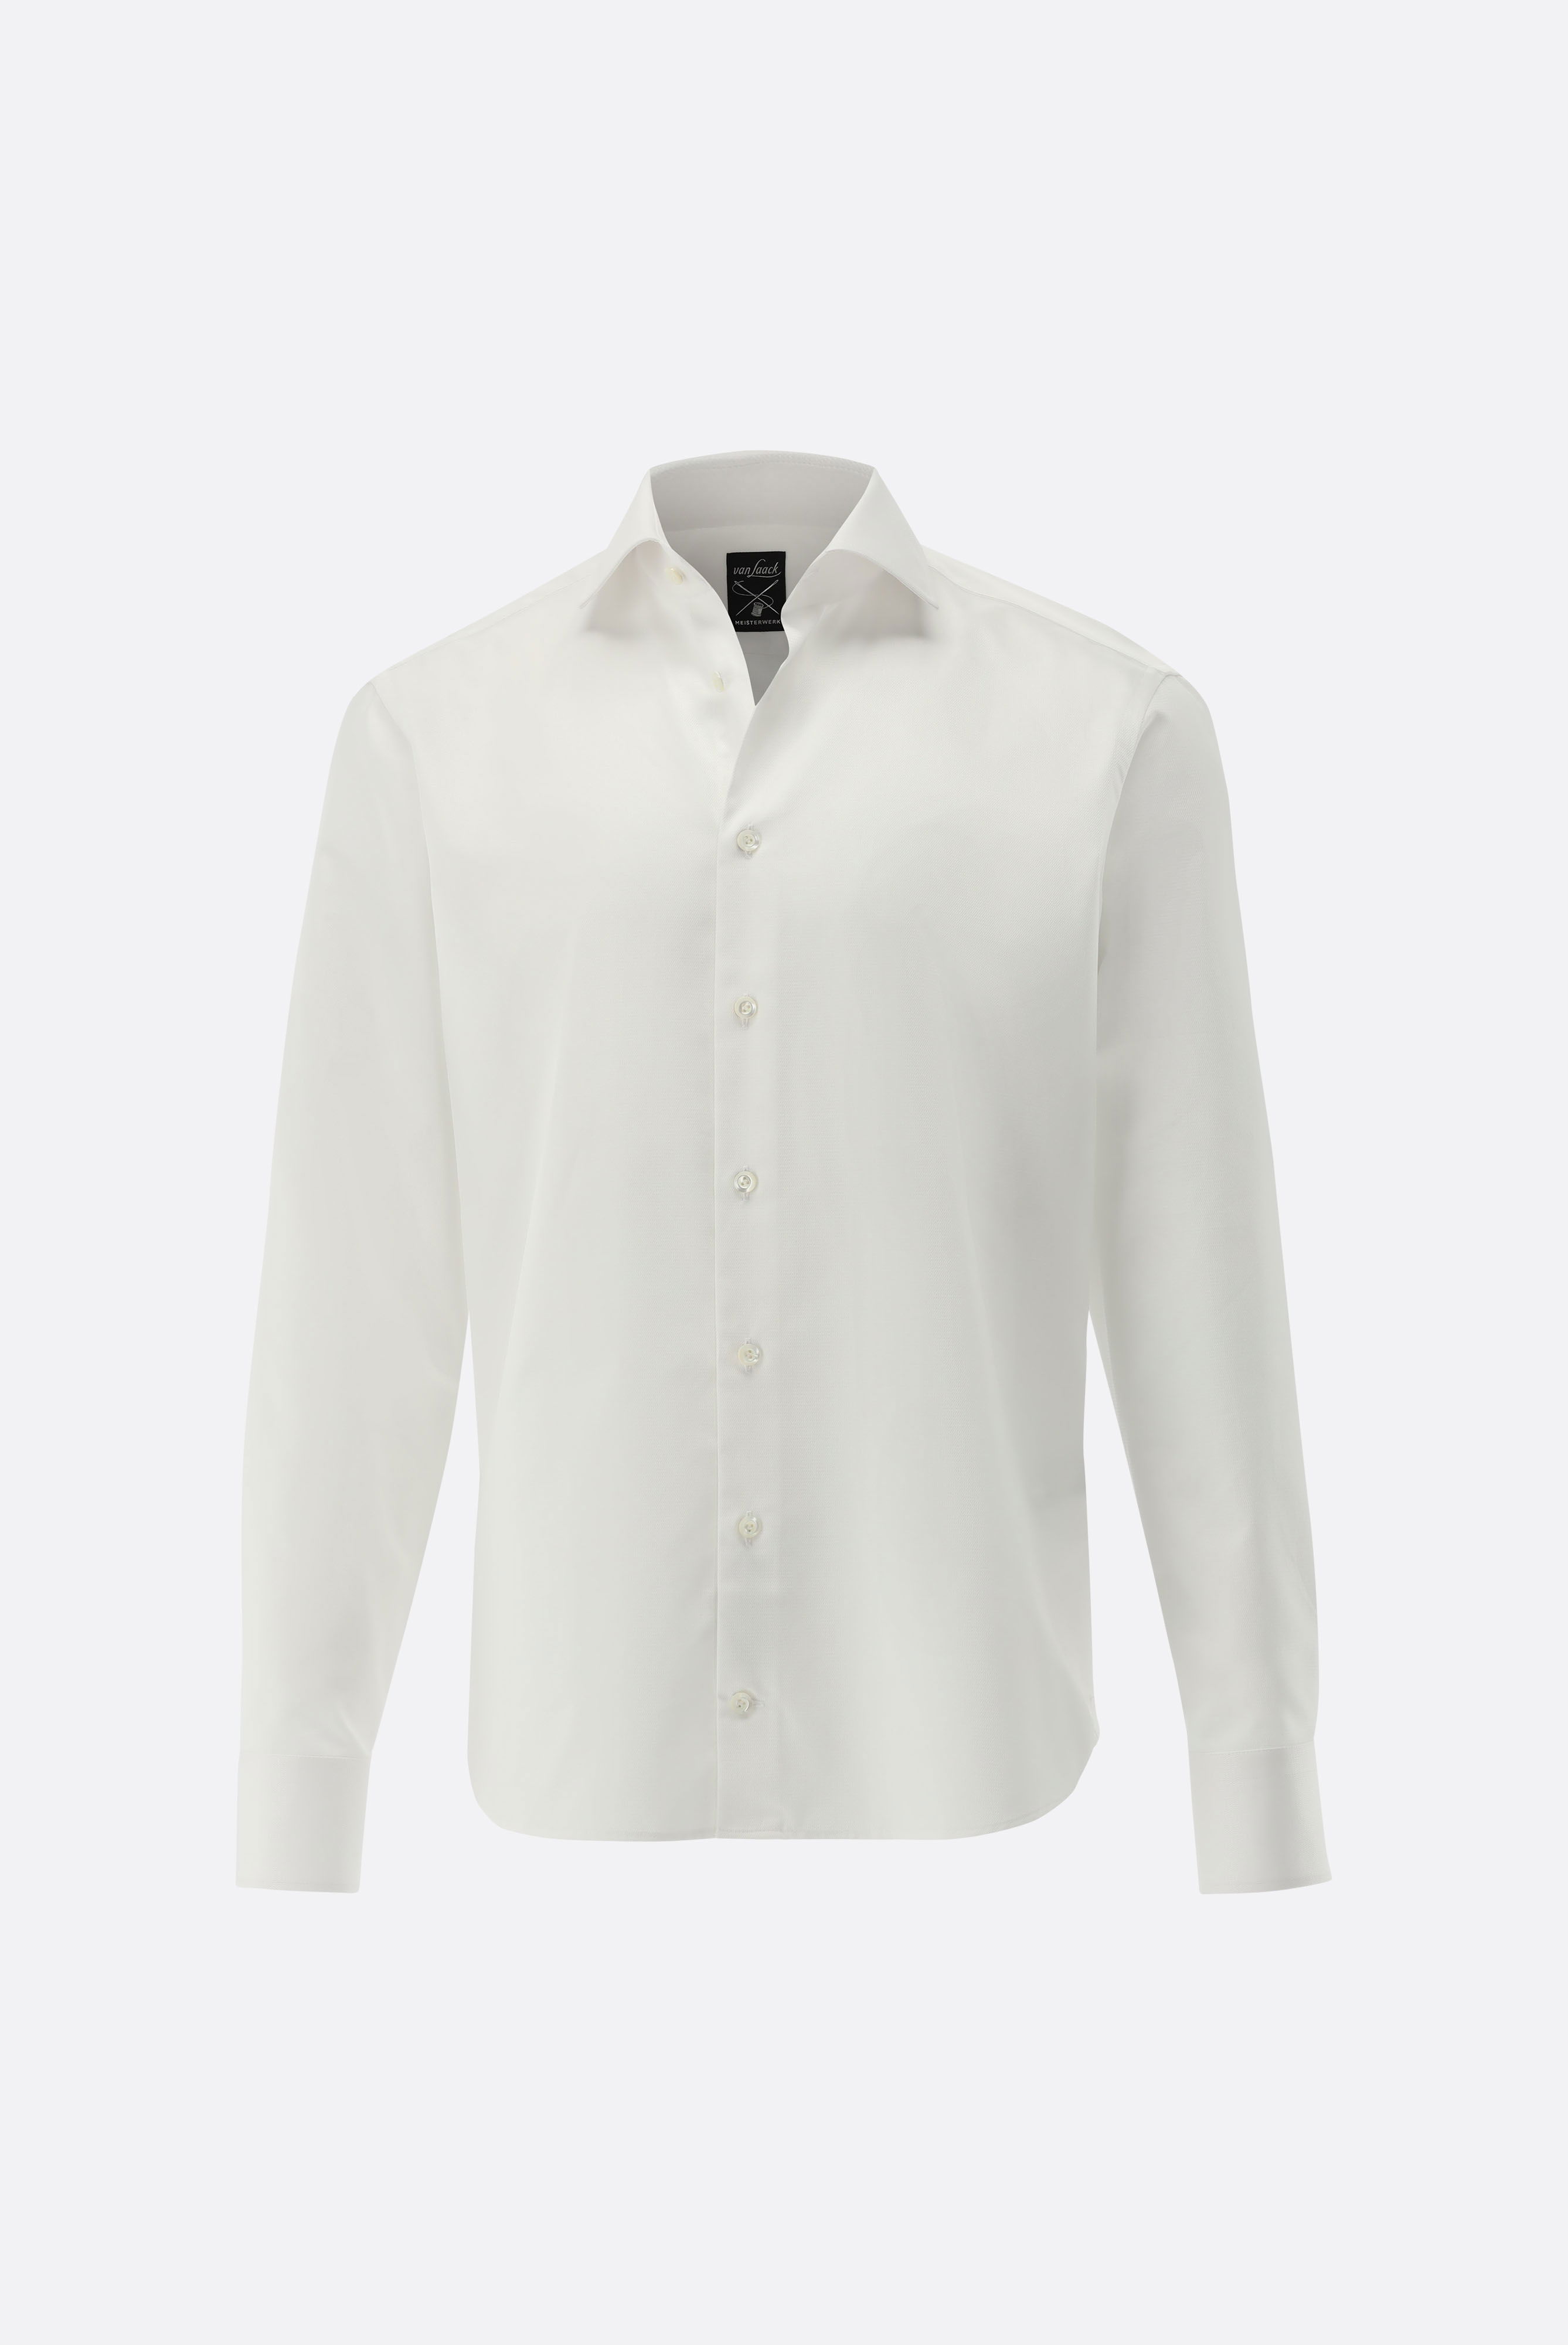 Bügelleichte Hemden+Bügelfreies Twill Hemd mit Struktur Tailor Fit+20.2020.BQ.150301.000.38